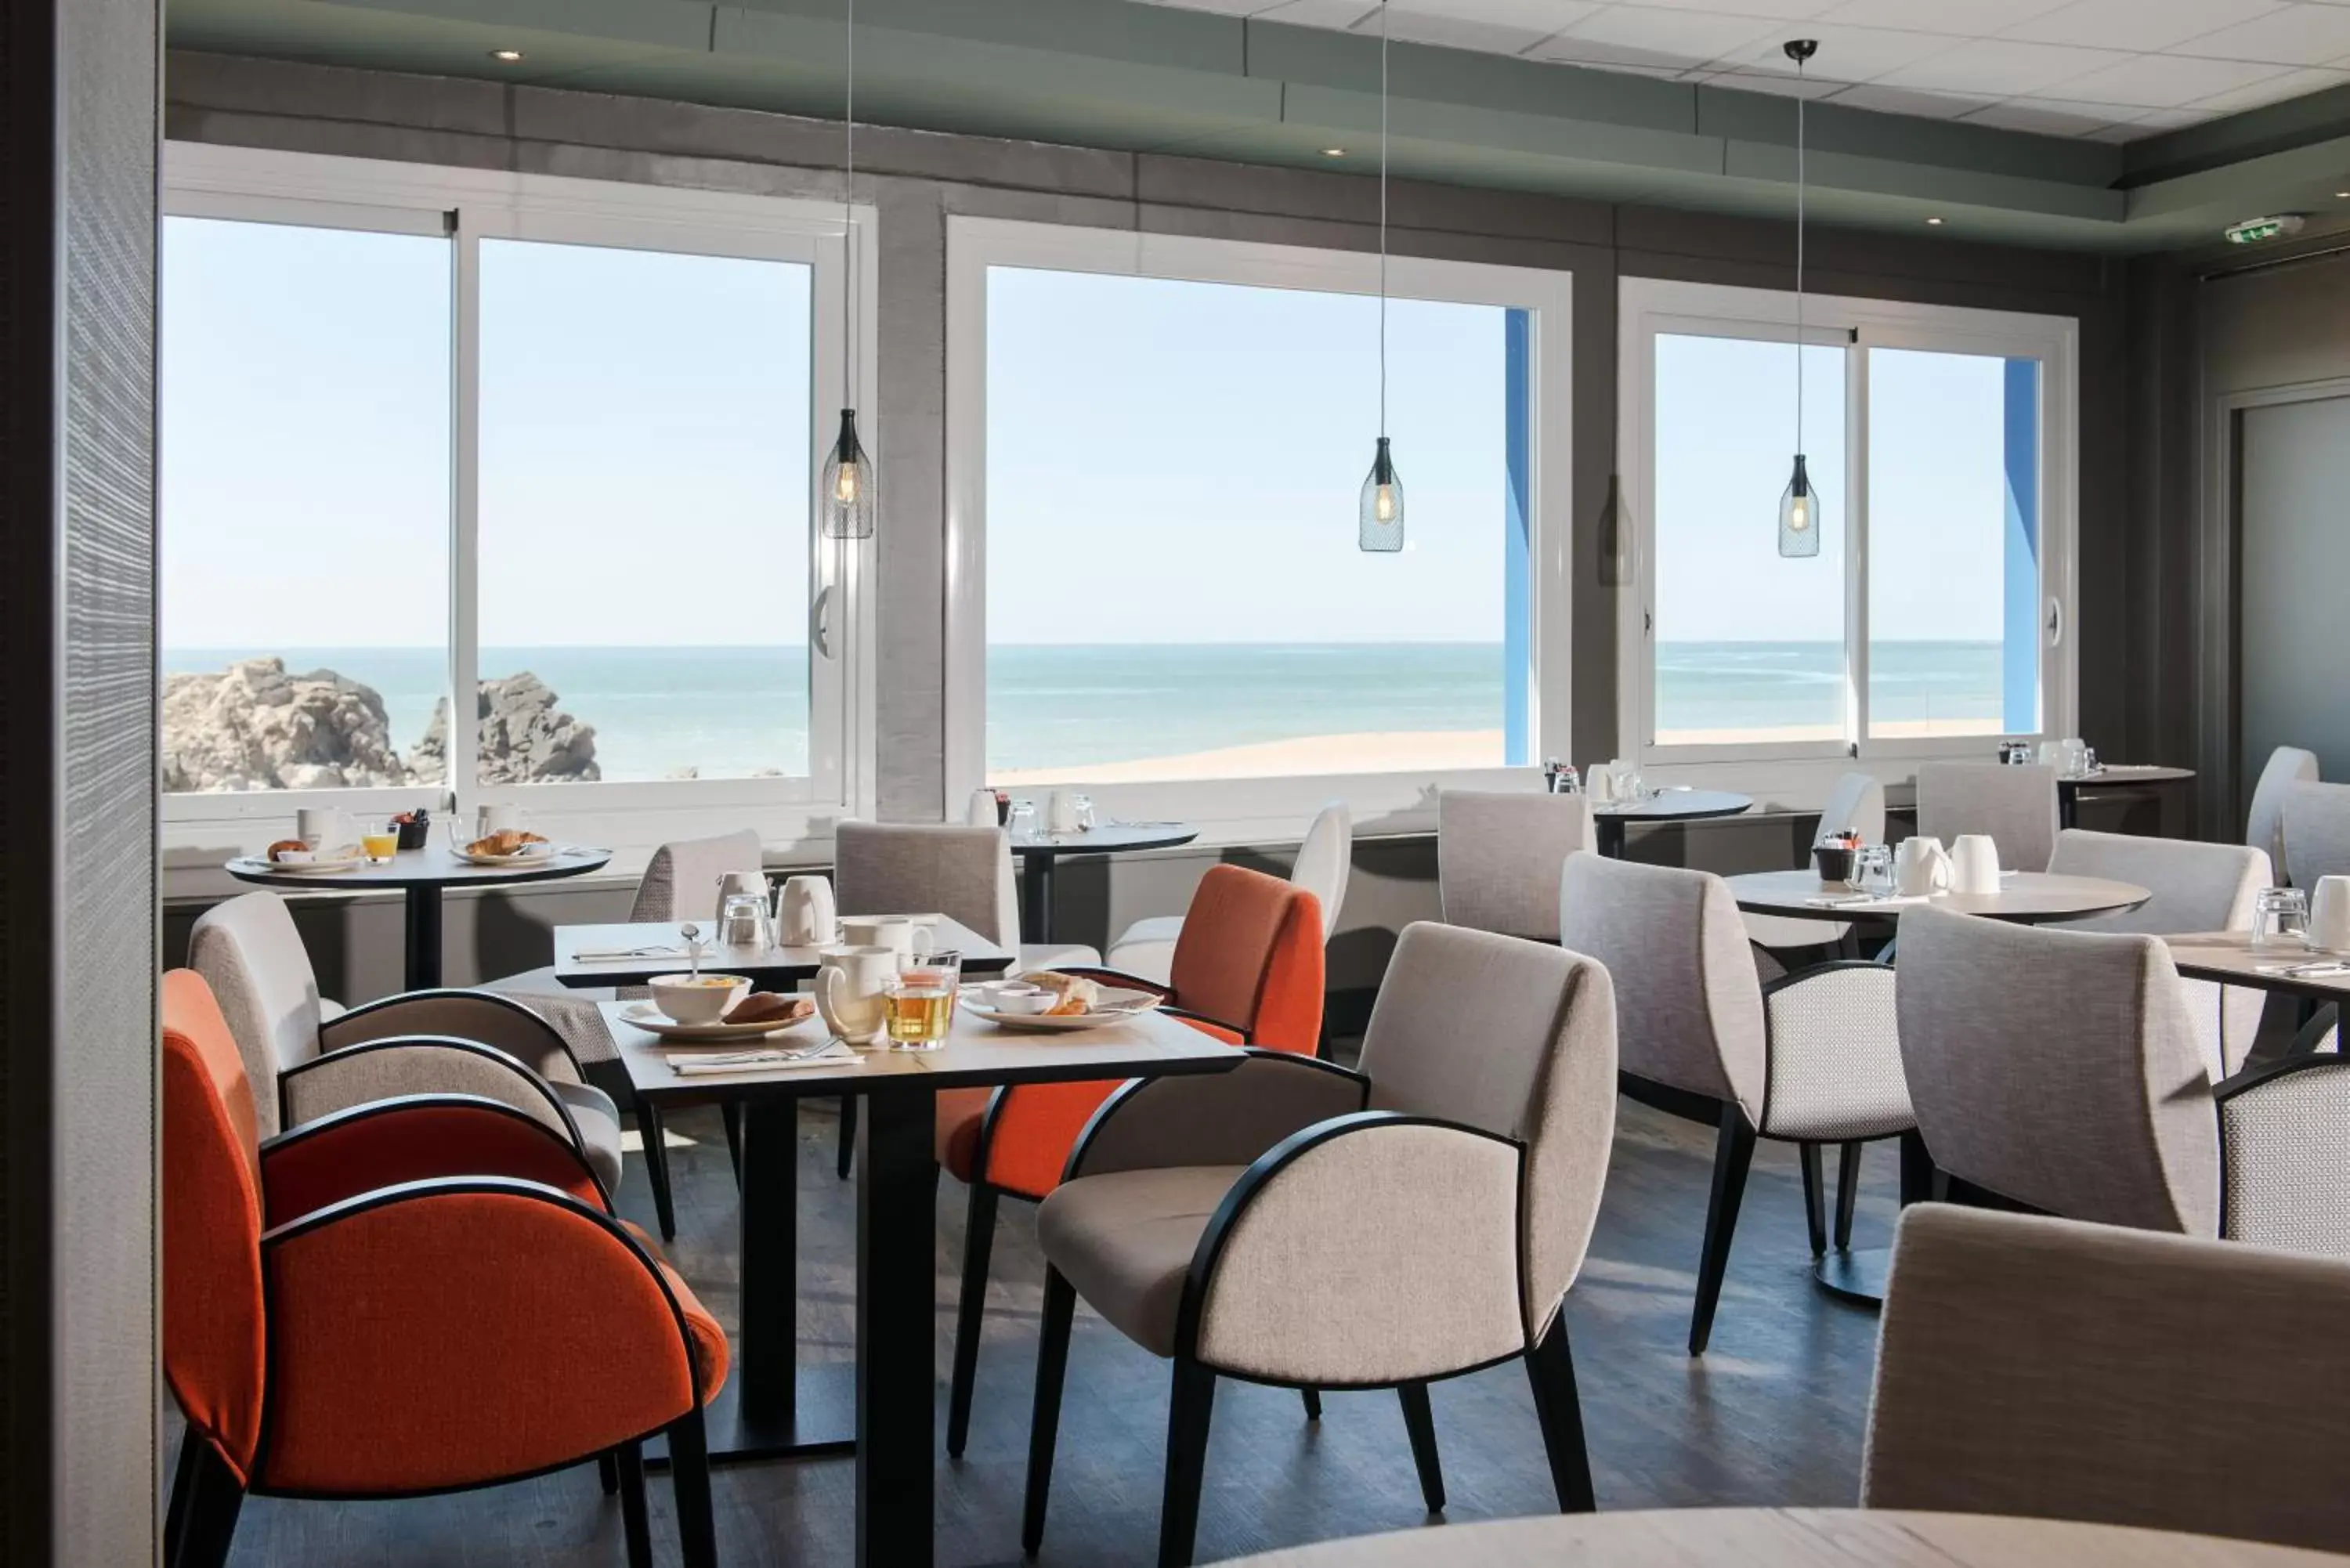 Buffet breakfast, Restaurant/Places to Eat in Best Western Hotel De La Plage Saint Marc sur Mer